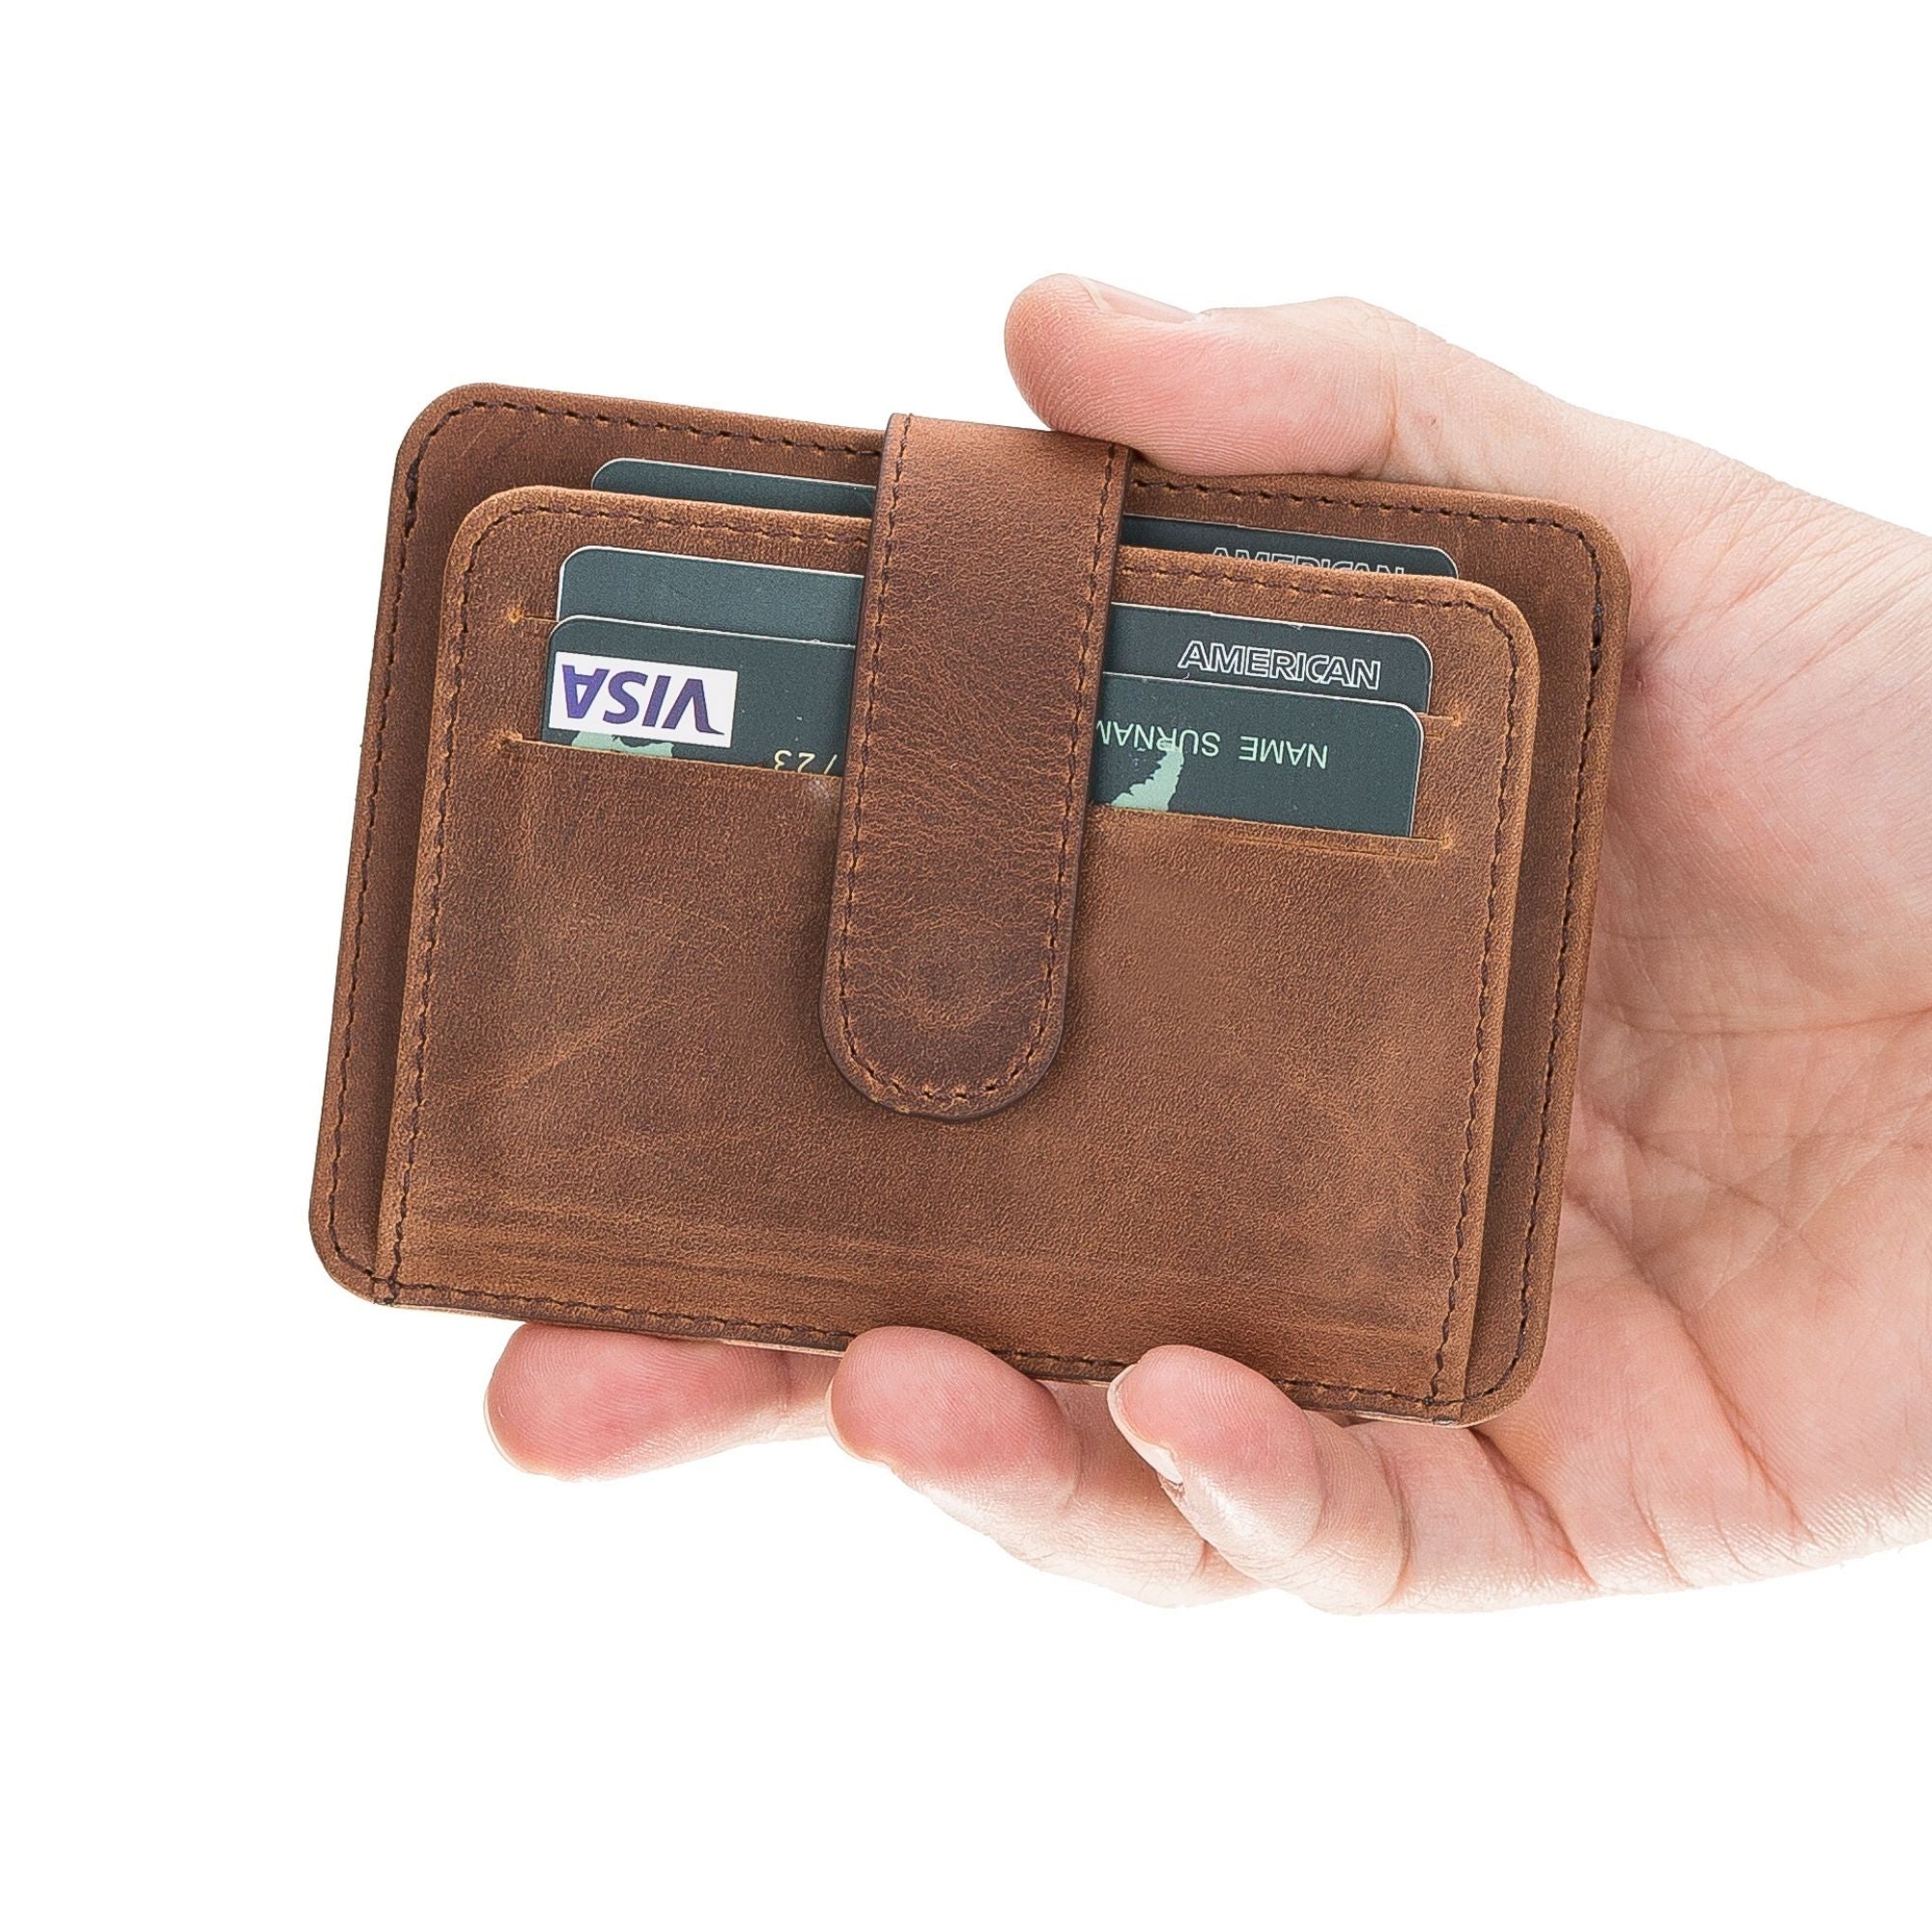 Cortez Handcrafted Leather Slim Wallet with Card Holder-Dark Brown---TORONATA